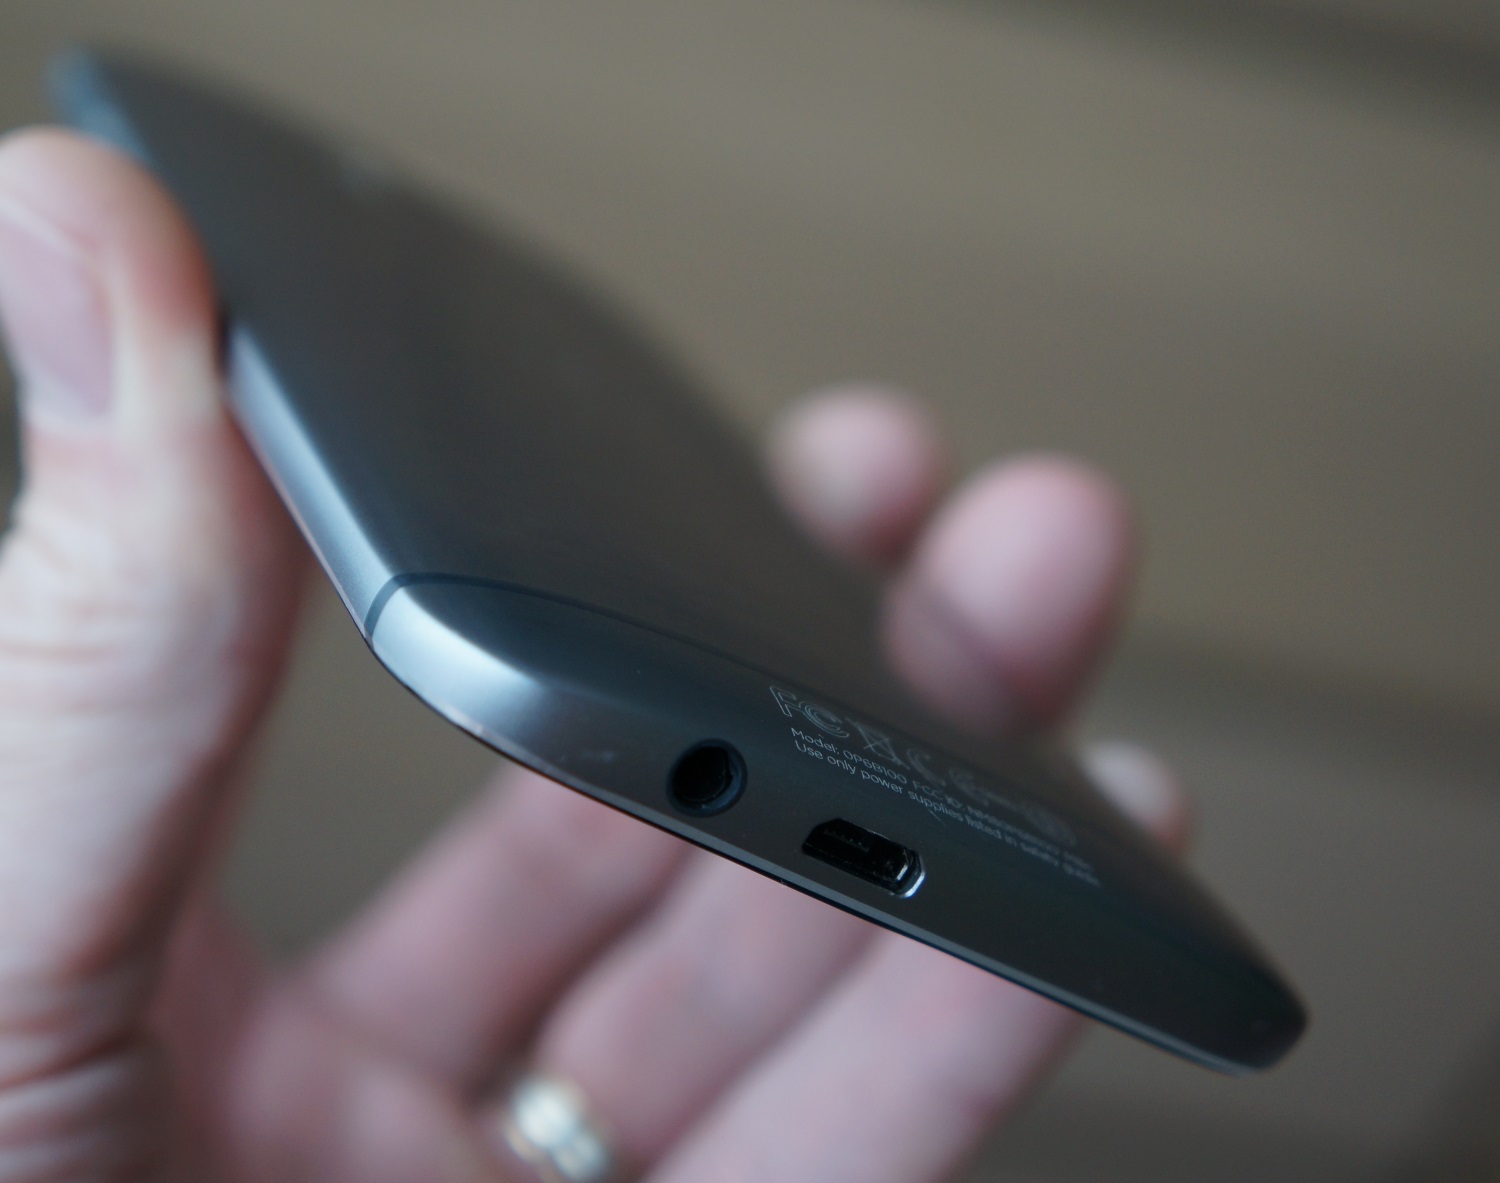 HTC One 2014 (M8) : un des plus beaux smartphones mais est-ce suffisant ?